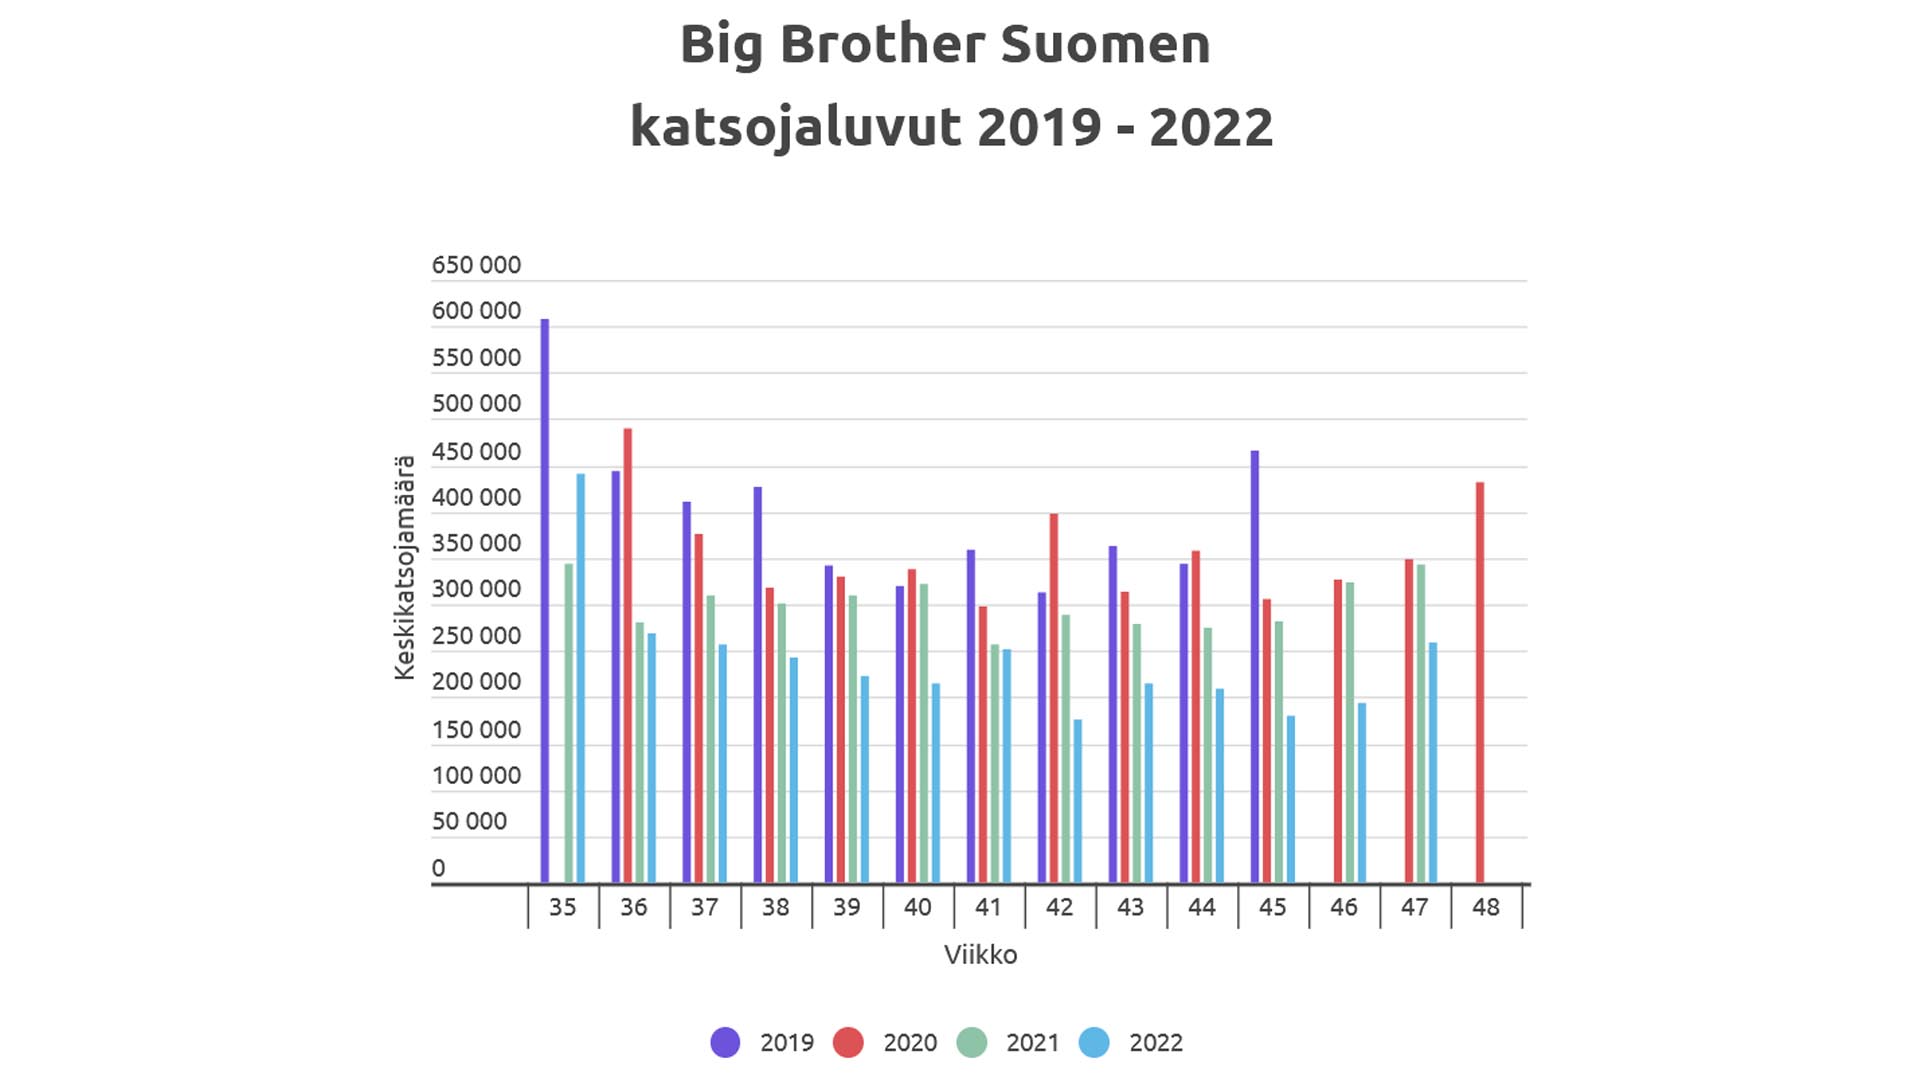 Suomen Big Brotherin normaalikausien sunnuntailähetysten keskikatsojamäärät vuosina 2019-2022. Grafiikka: © Jarkko Nieminen / Fanisivut.net ja Infogram.